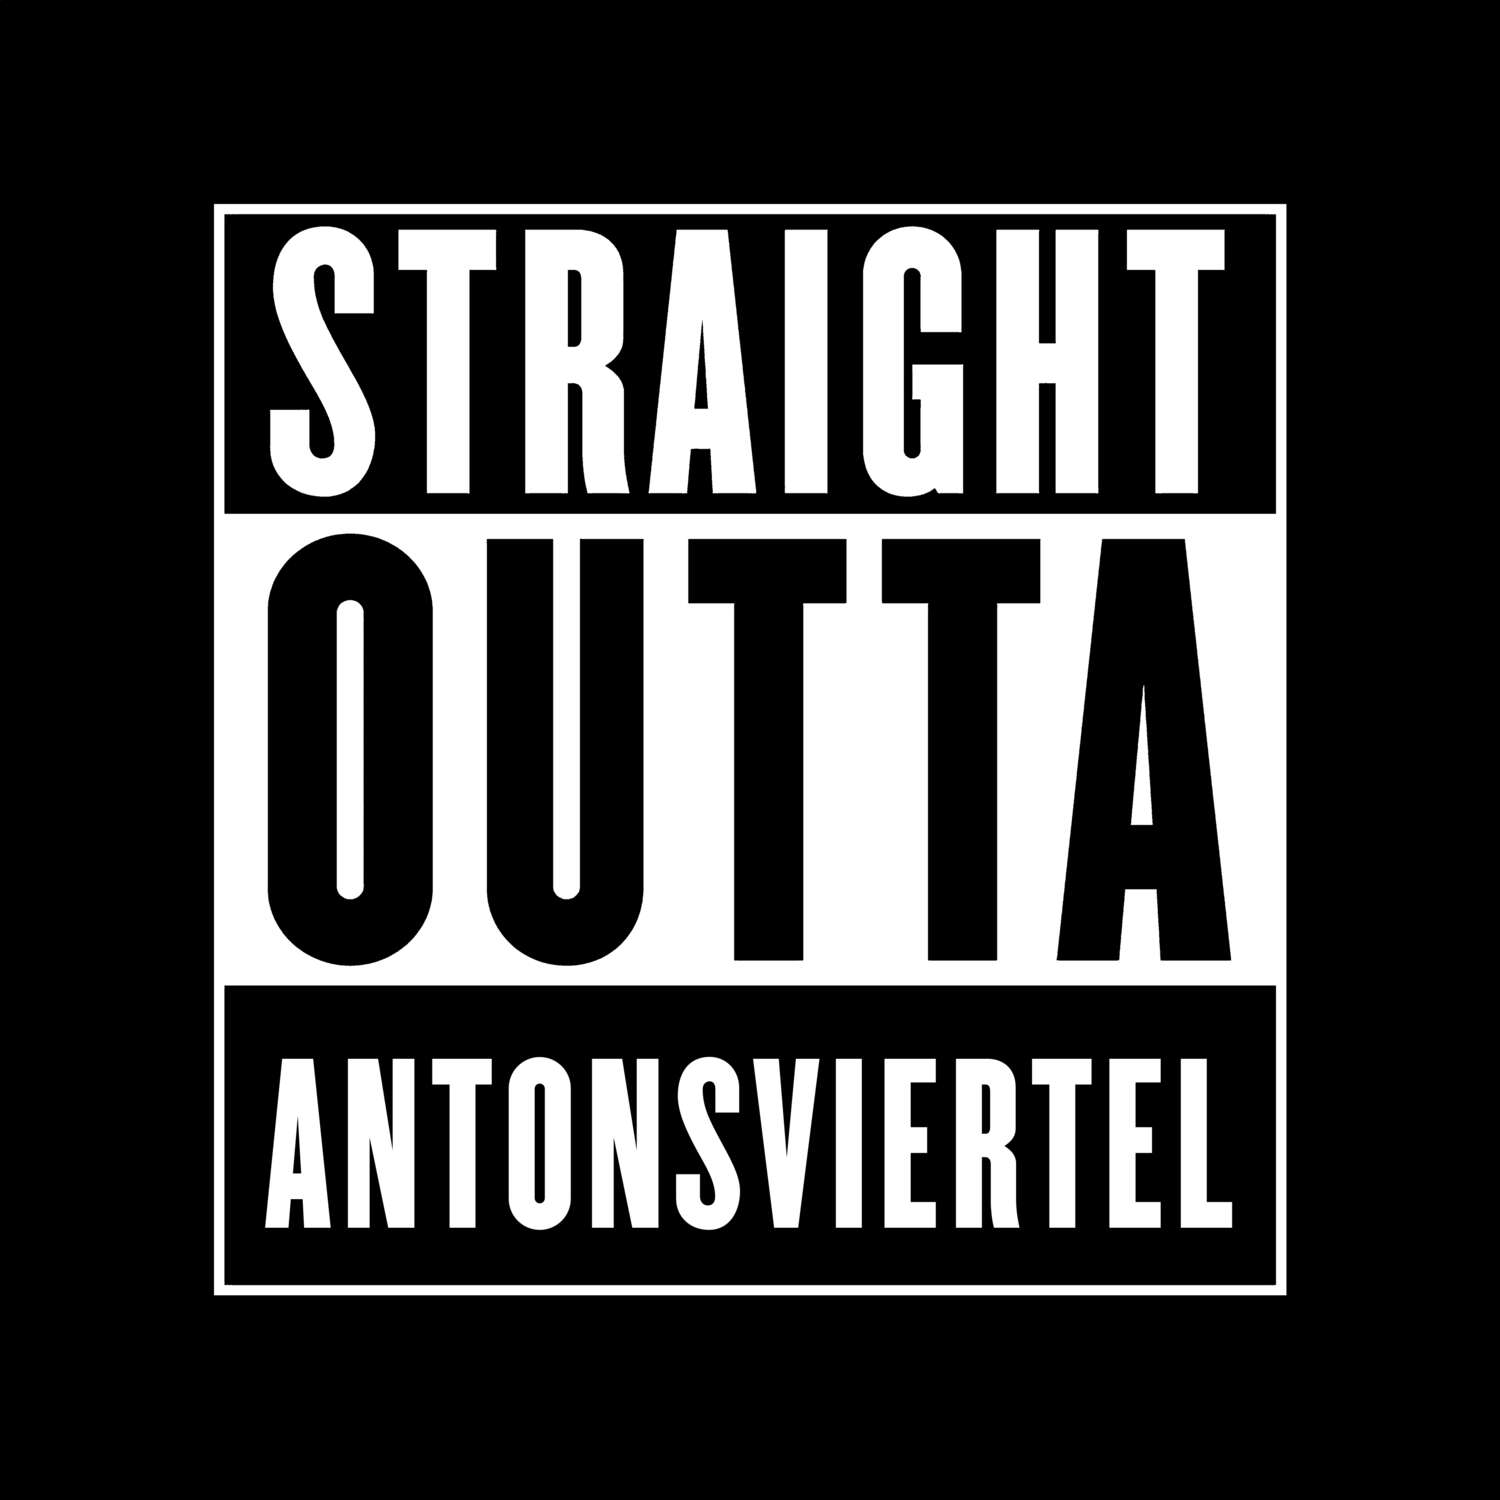 Antonsviertel T-Shirt »Straight Outta«